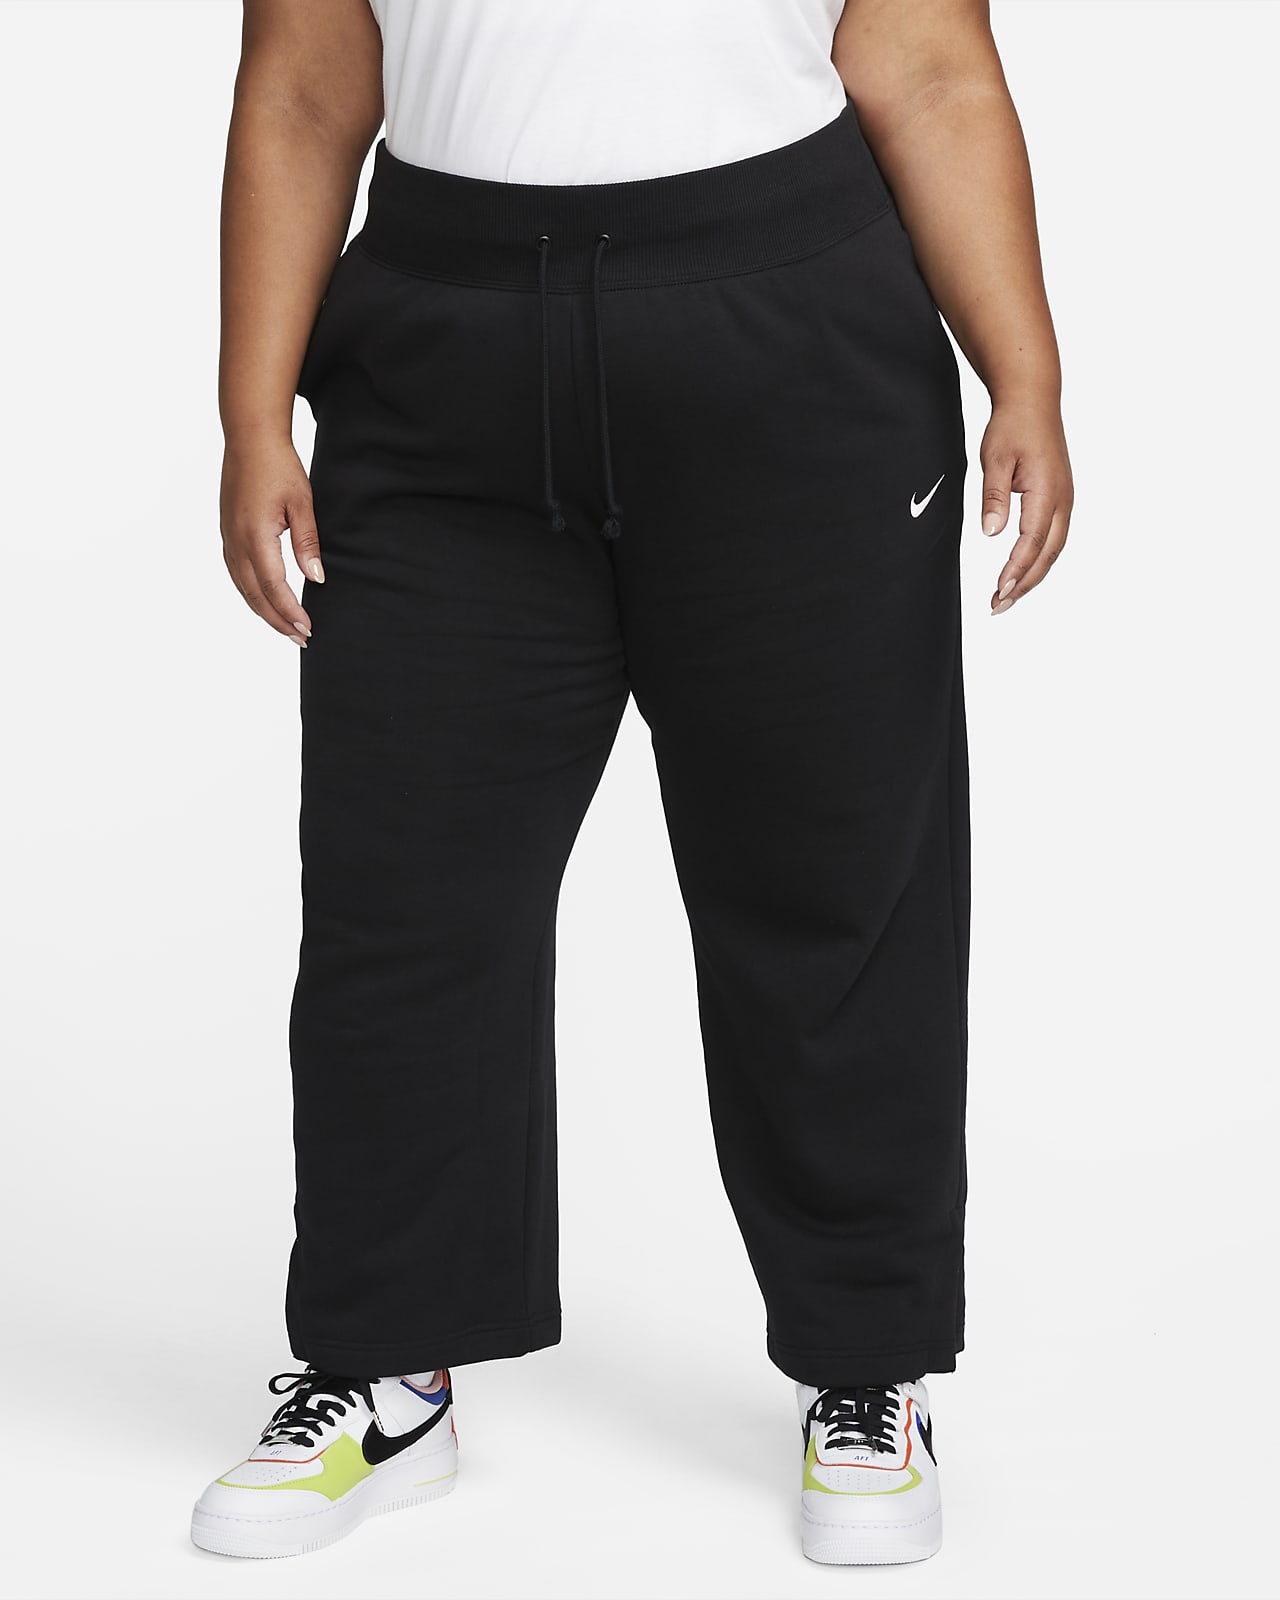 Nike Sportswear Phoenix Fleece magas derekú, széles szárú női melegítőnadrág (plus size méret)